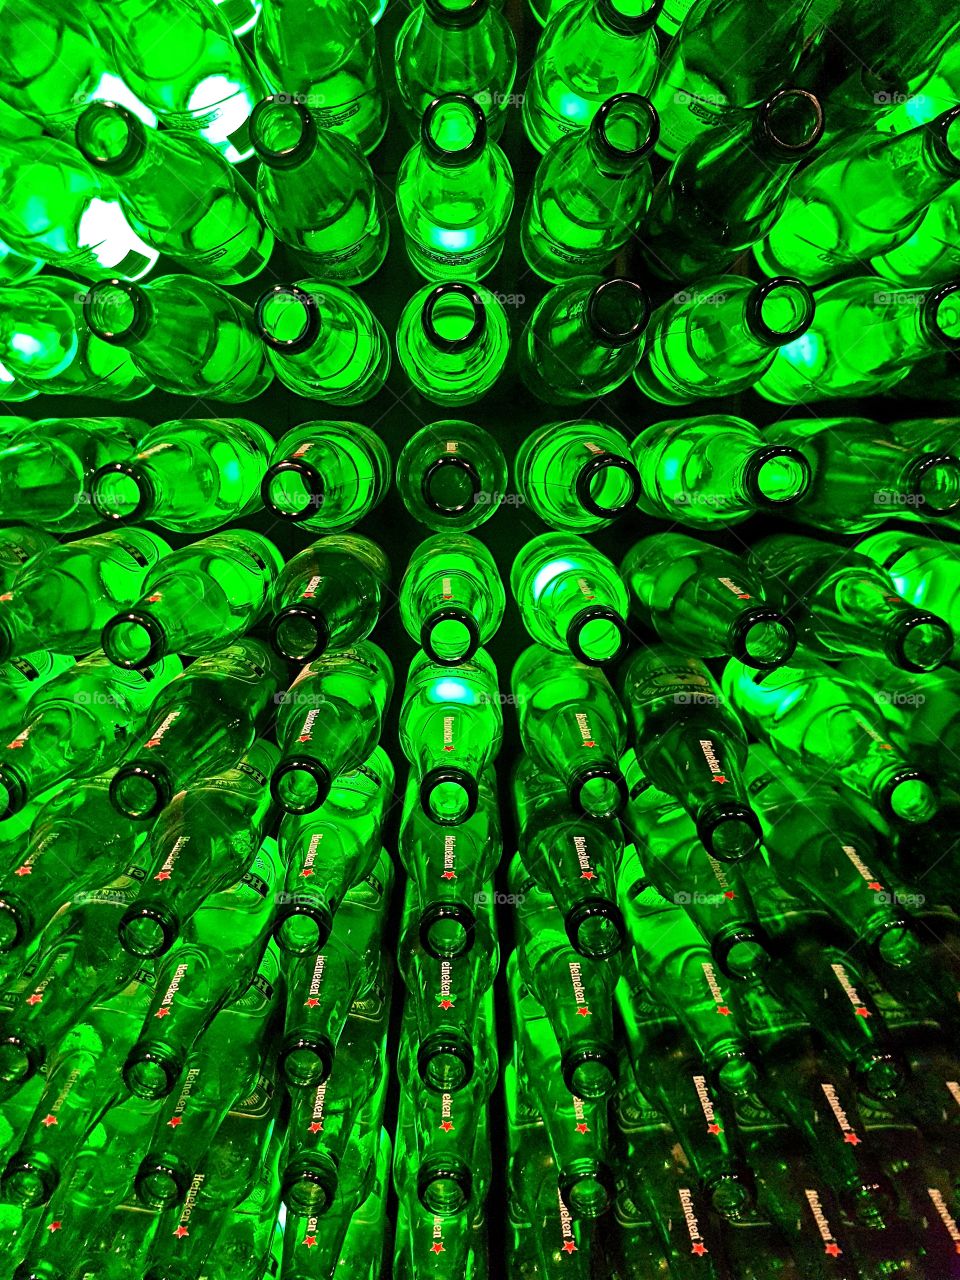 Heineken beer bottles on display 